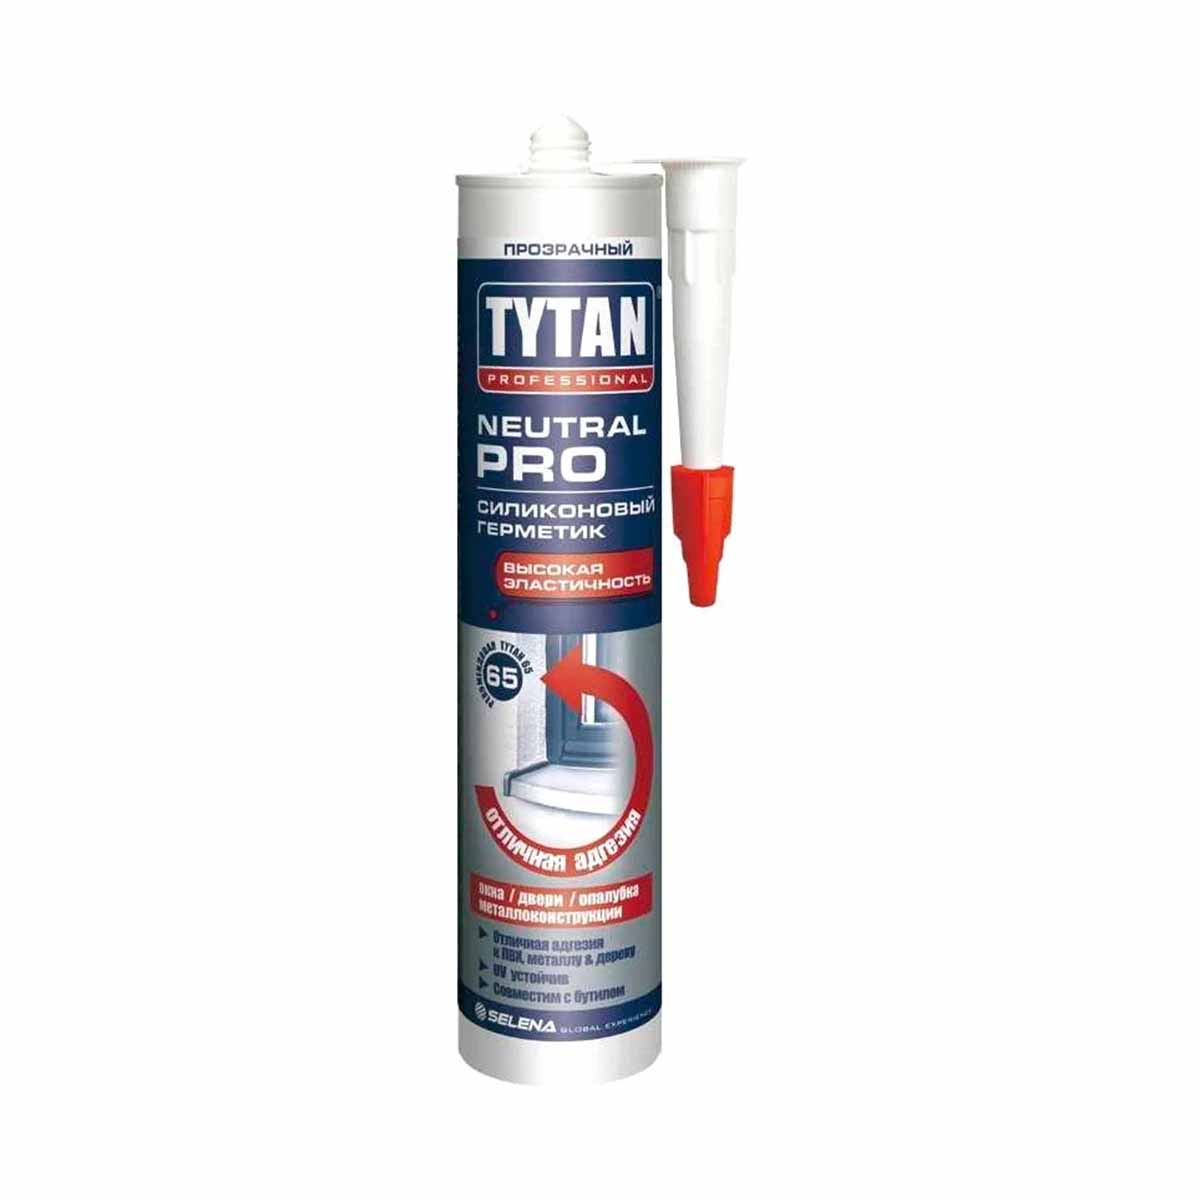 Нейтральный силиконовый герметик Tytan Professional Neutral PRO 17957, 280 мл, прозрачный герметик pplus silicone sanitary силиконовый прозрачный 280 мл